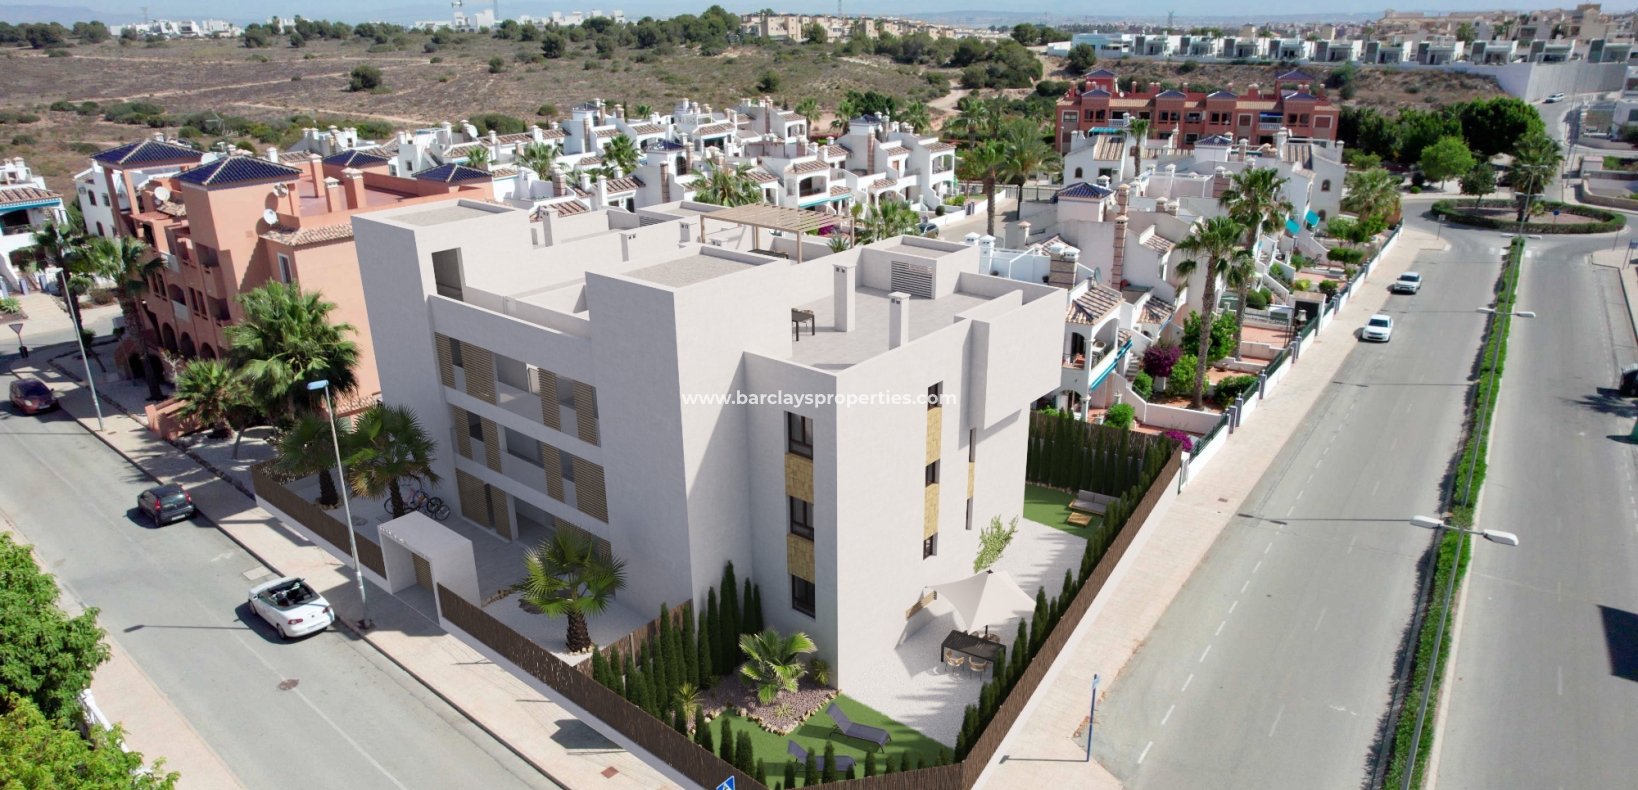  Appartement neuf à vendre à Alicante